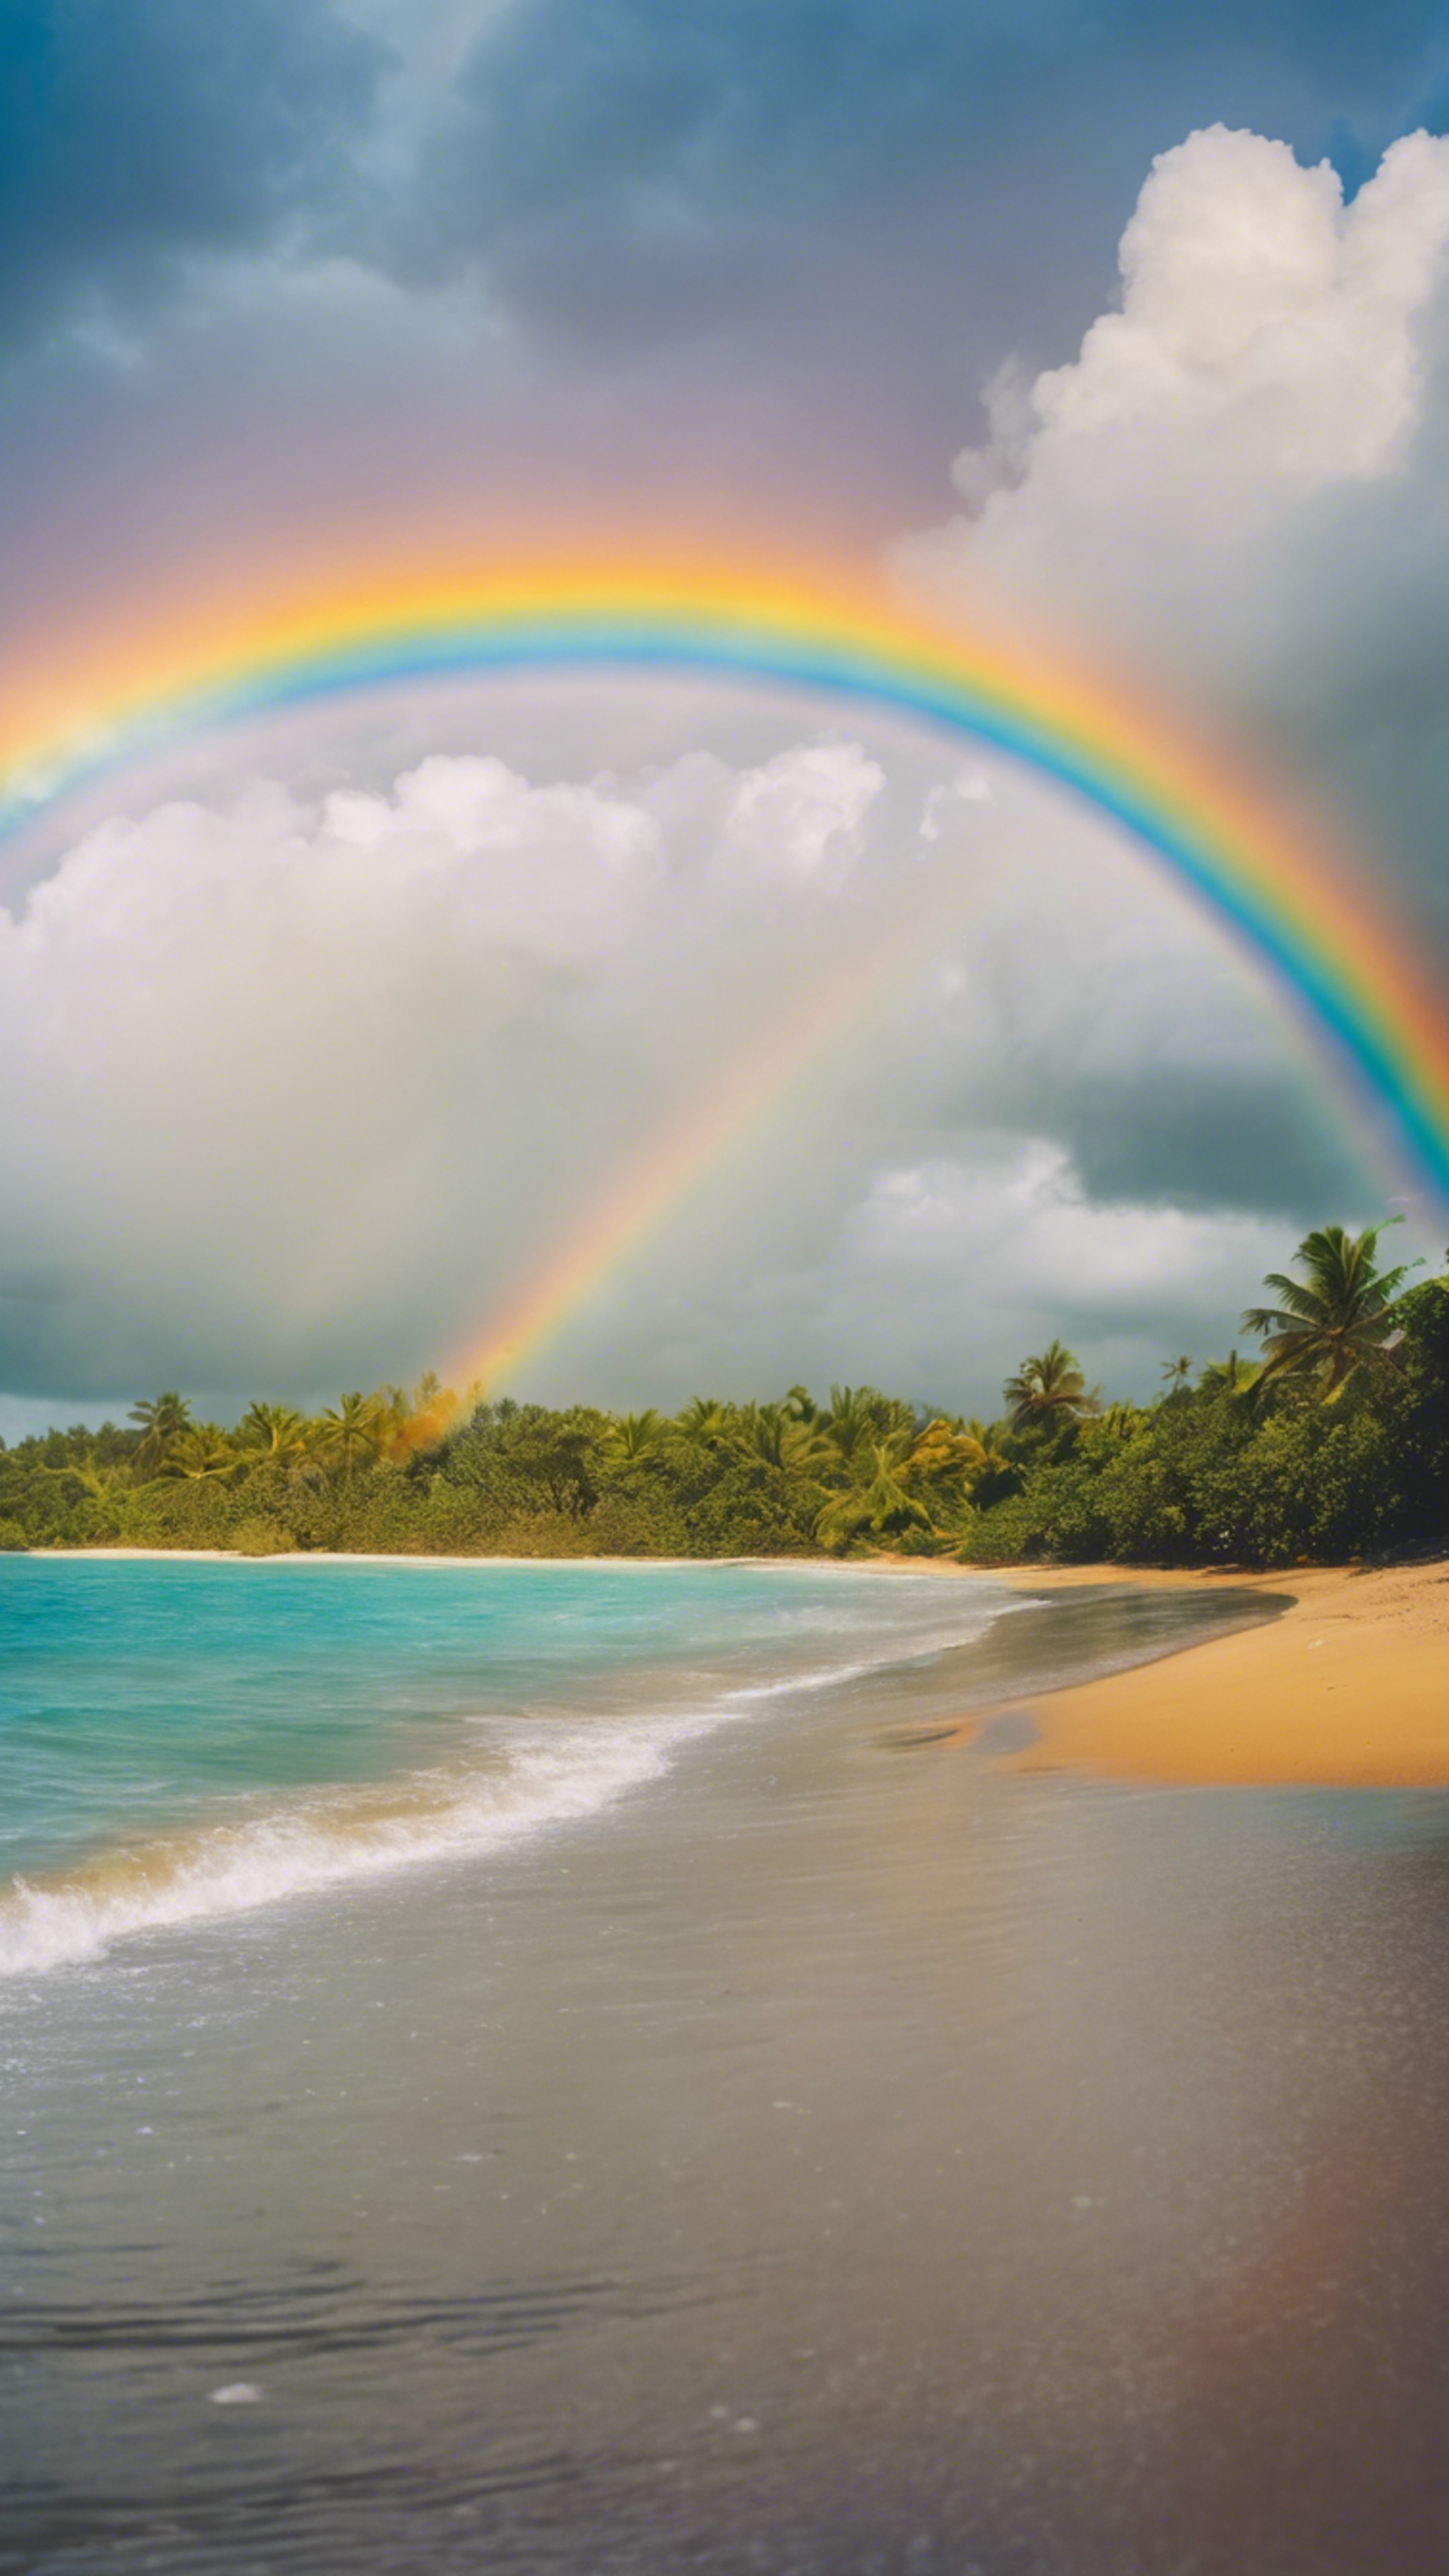 Vivid rainbow arcing across the sky after a rainfall at a tropical beach. Дэлгэцийн зураг[d3854ca165cf432a9c18]